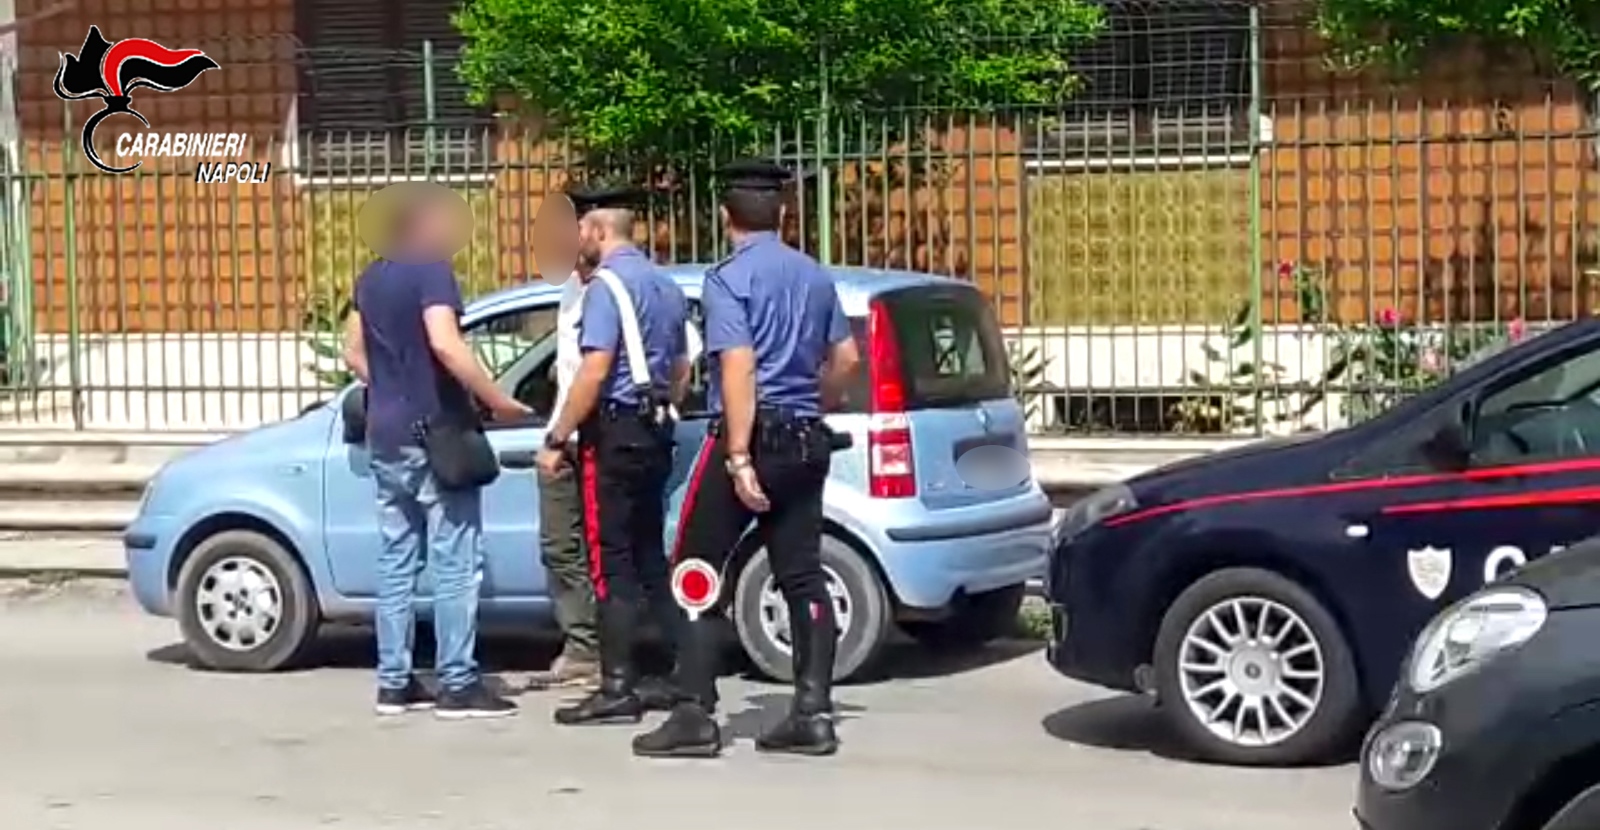  Pomigliano d’Arco: giovane intimidito da parcheggiatore abusivo lo paga ma poi denuncia: arrestato per estorsione